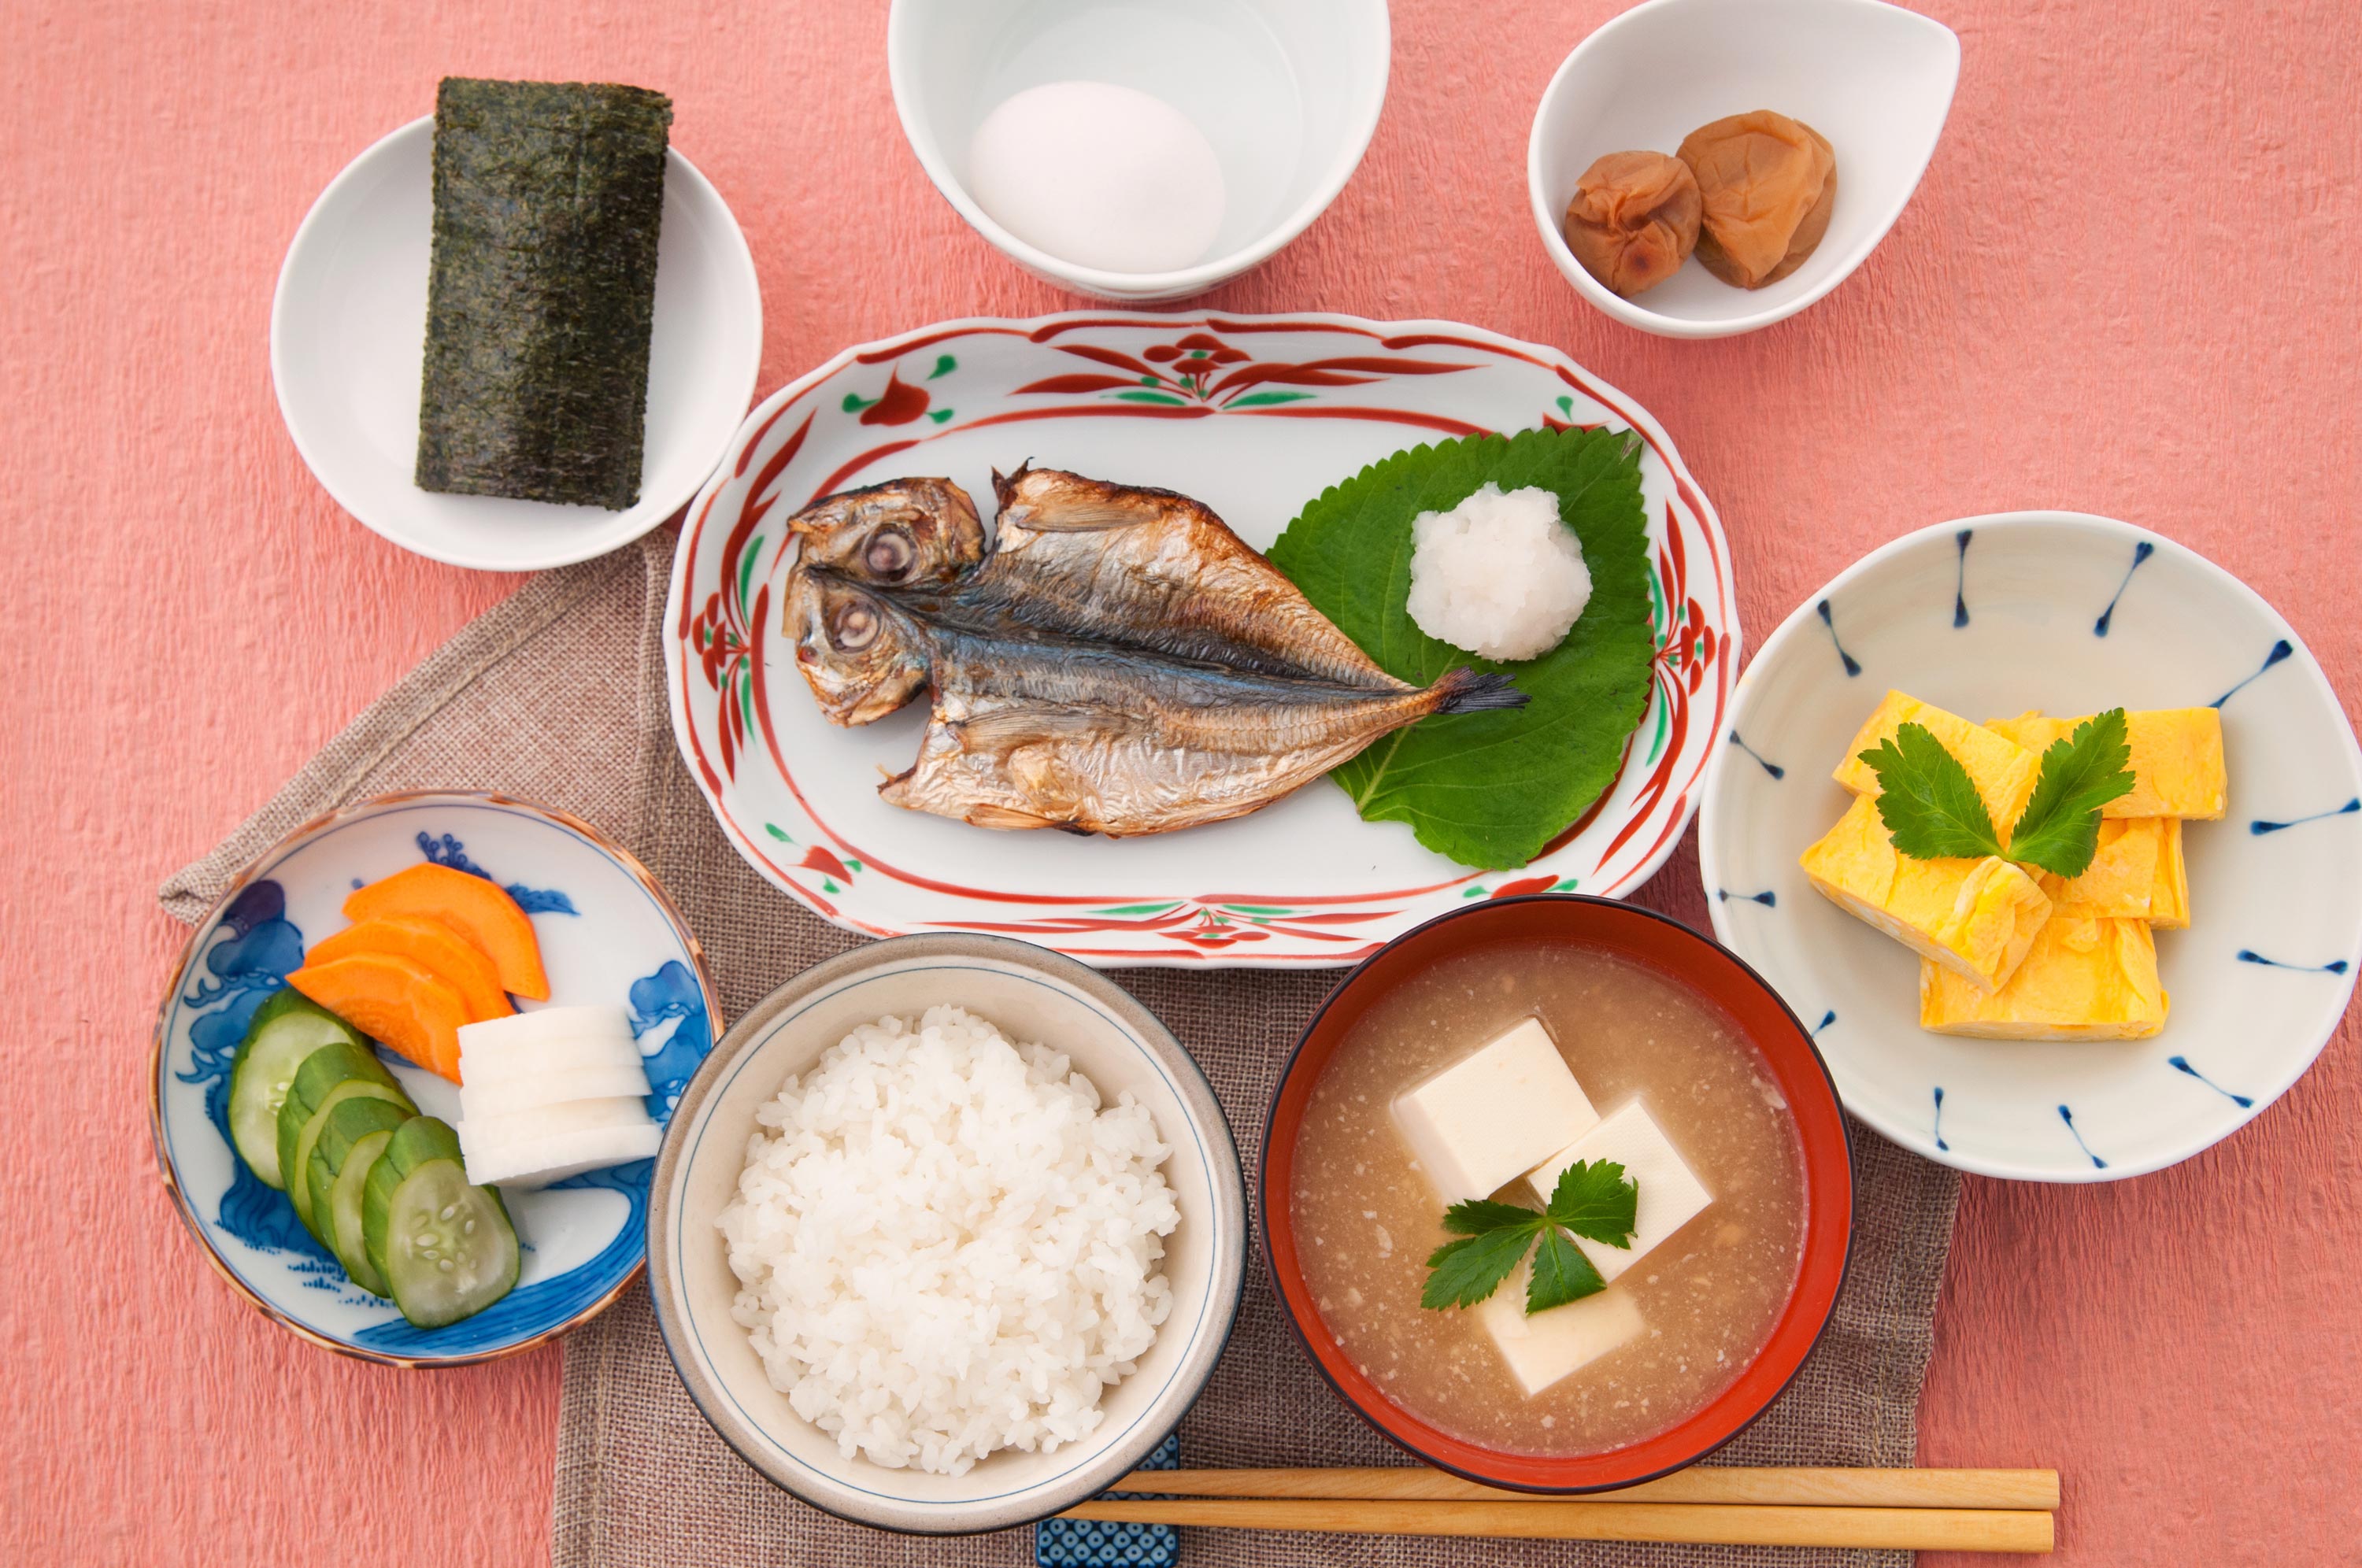 Japanisch kochen - die wichtigsten Basics - inkl. japanische Benimmregeln 24.05.2020